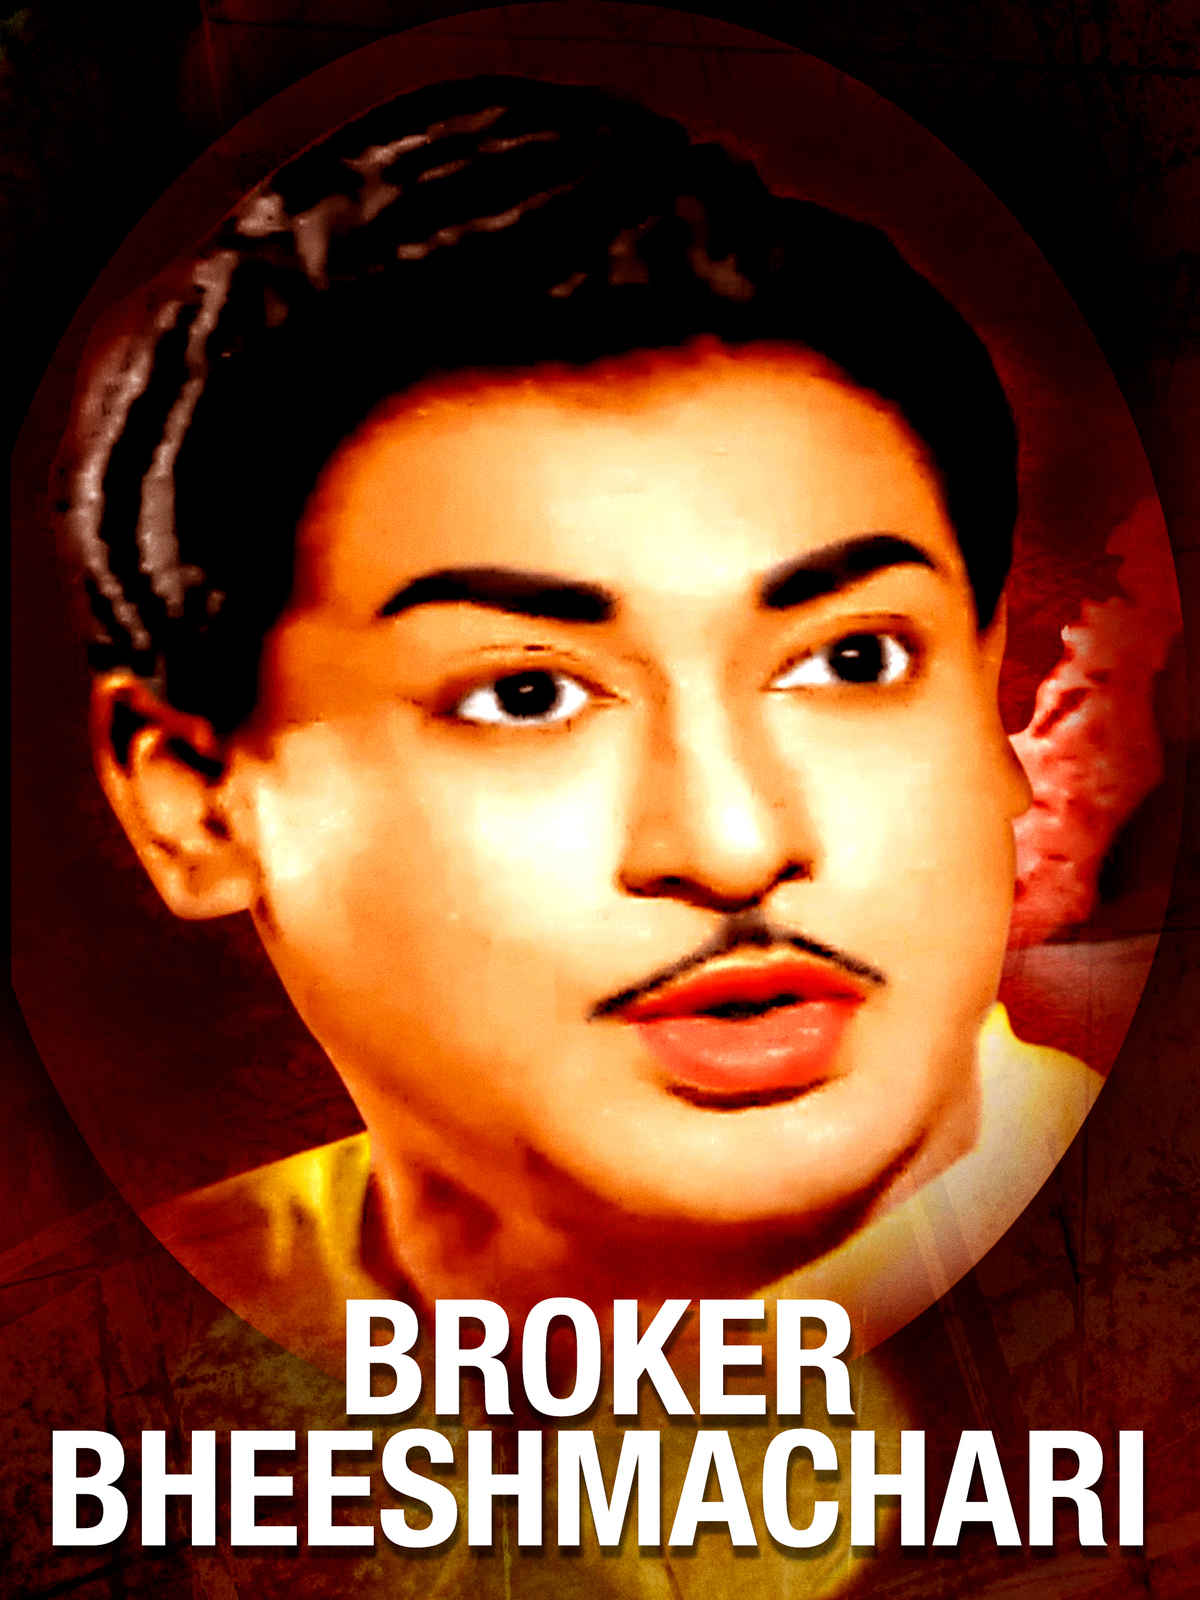 Broker Bheeshmachari